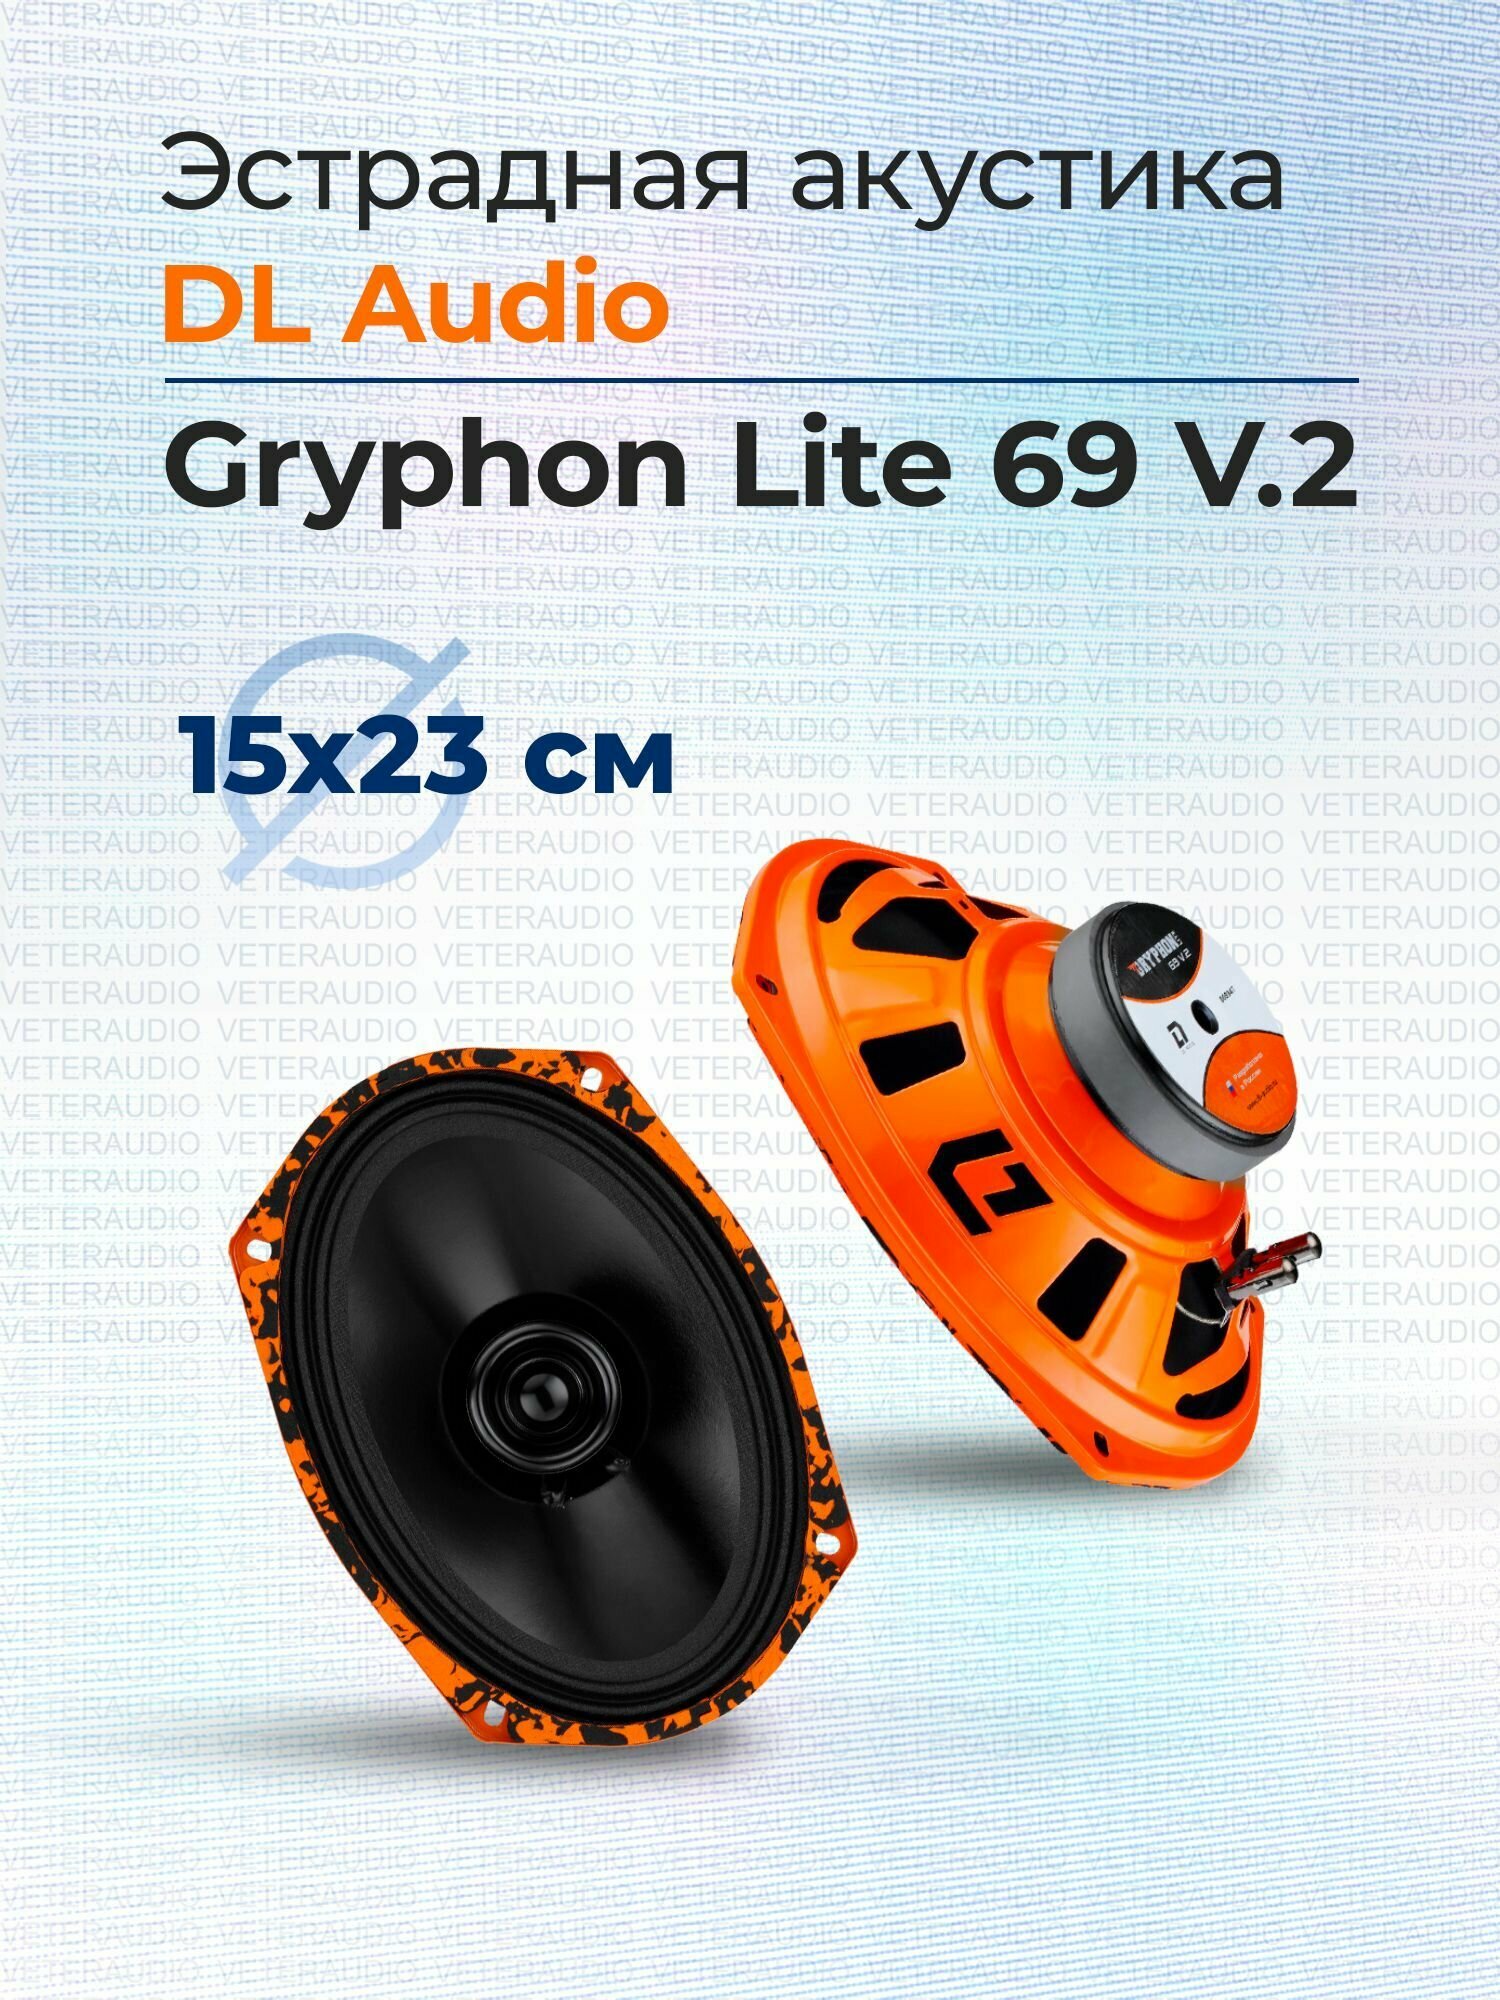 Эстрадная акустика DL Audio Gryphon Lite 69 V.2